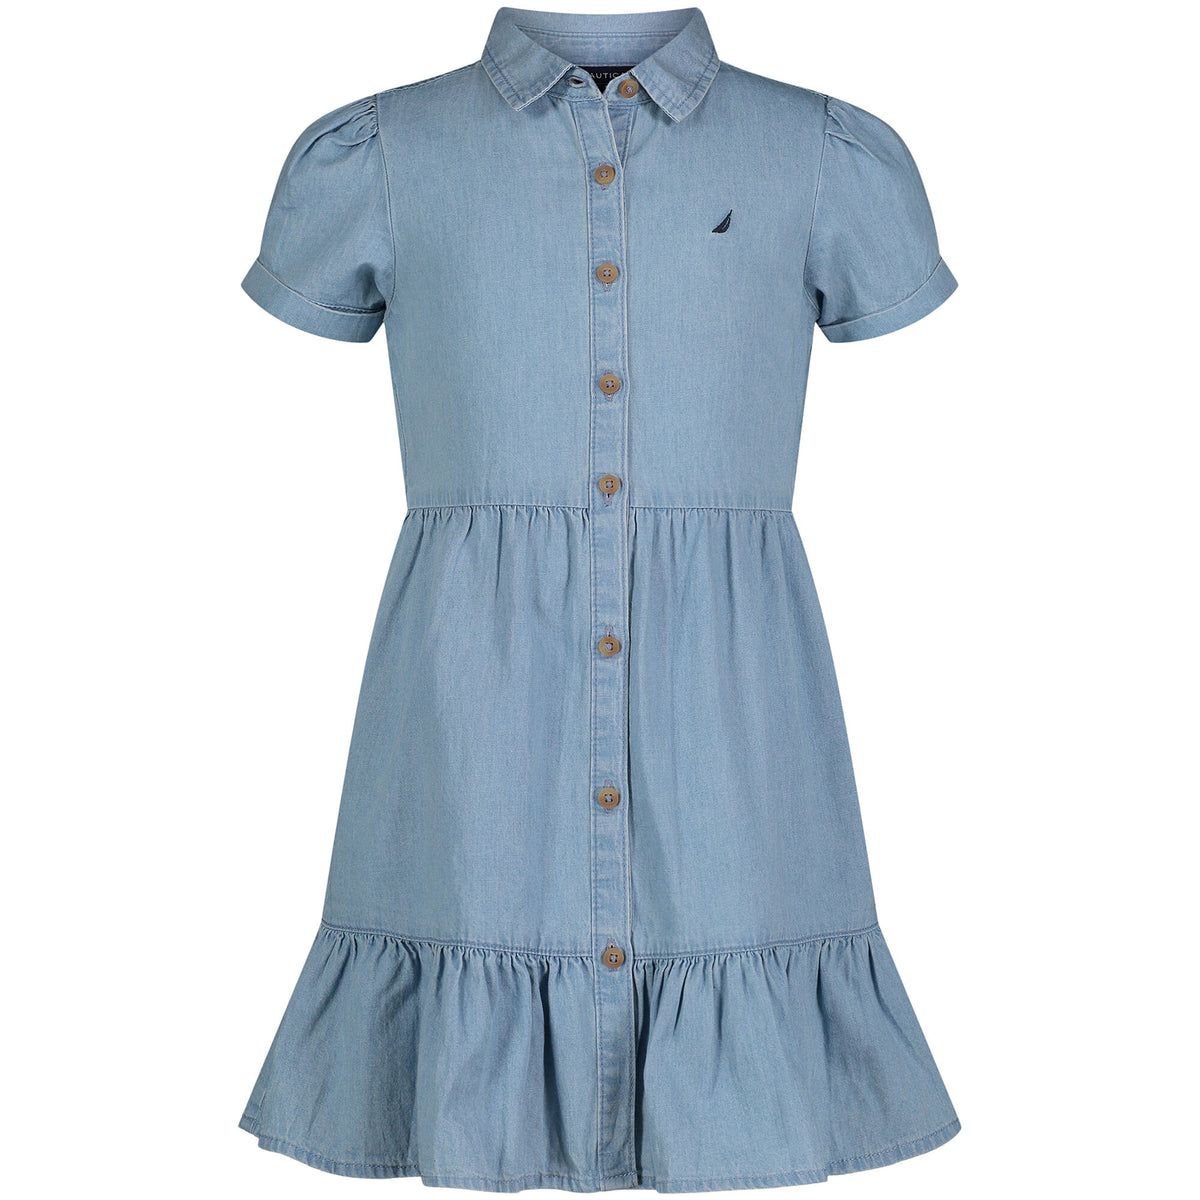 Nautica Toddler Girls' Shirt Dress (2T-4T) Green